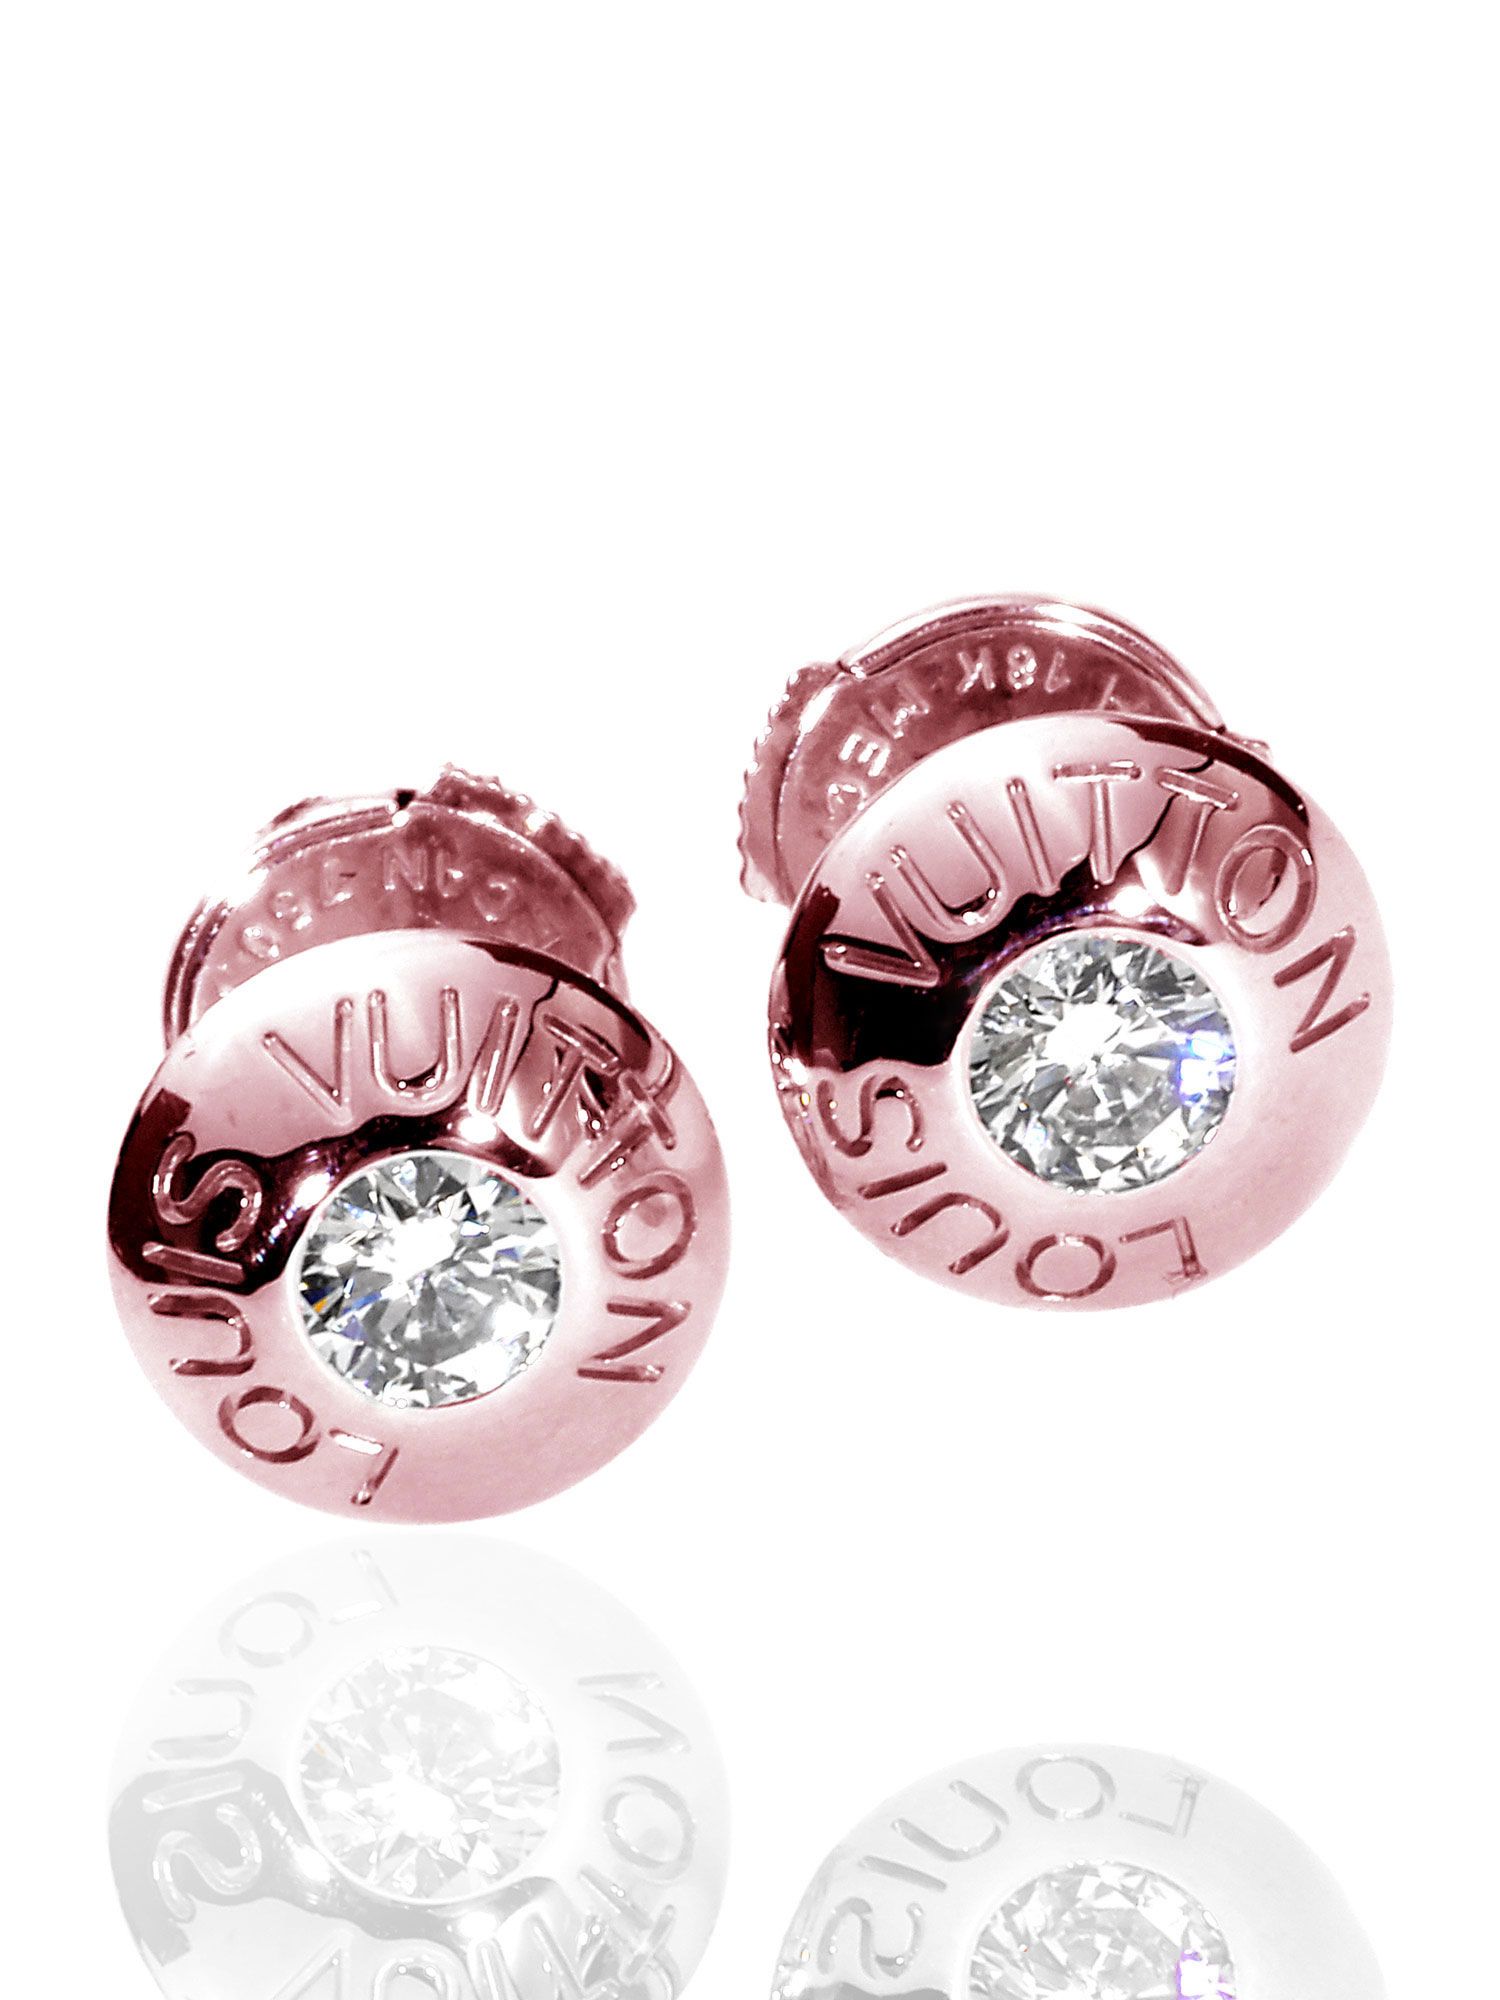 Asymmetric diamond earrings from Louis Vuitton's new